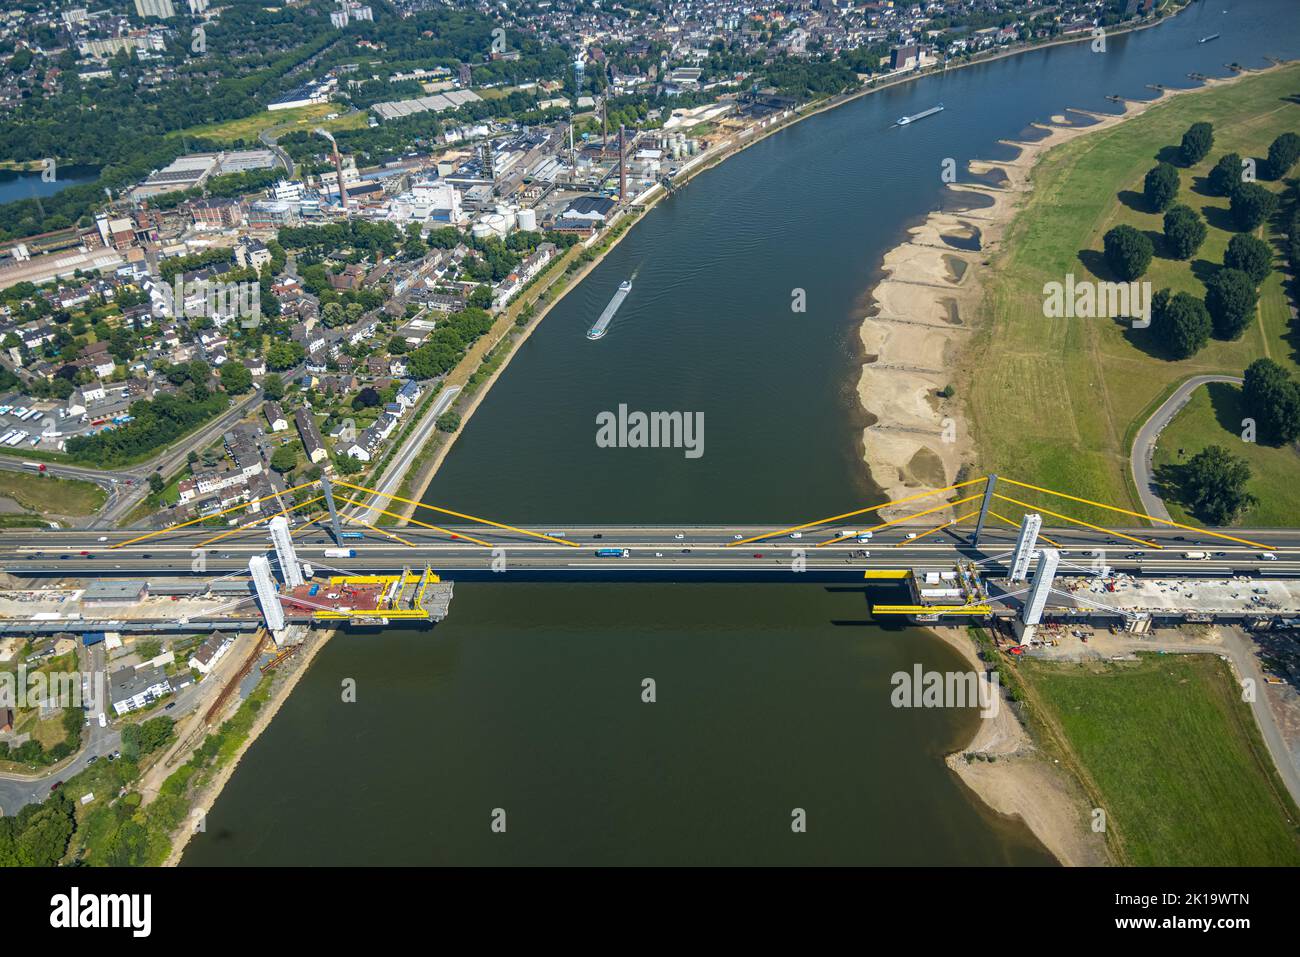 Luftbild, Baustelle mit Erweiterung der Autobahn A40 inklusive Ersatzneubau der Rheinbrücke Neuenkamp, Neuenkamp, Duisburg, Ruhrgebiet, Nordrhein-West Foto Stock